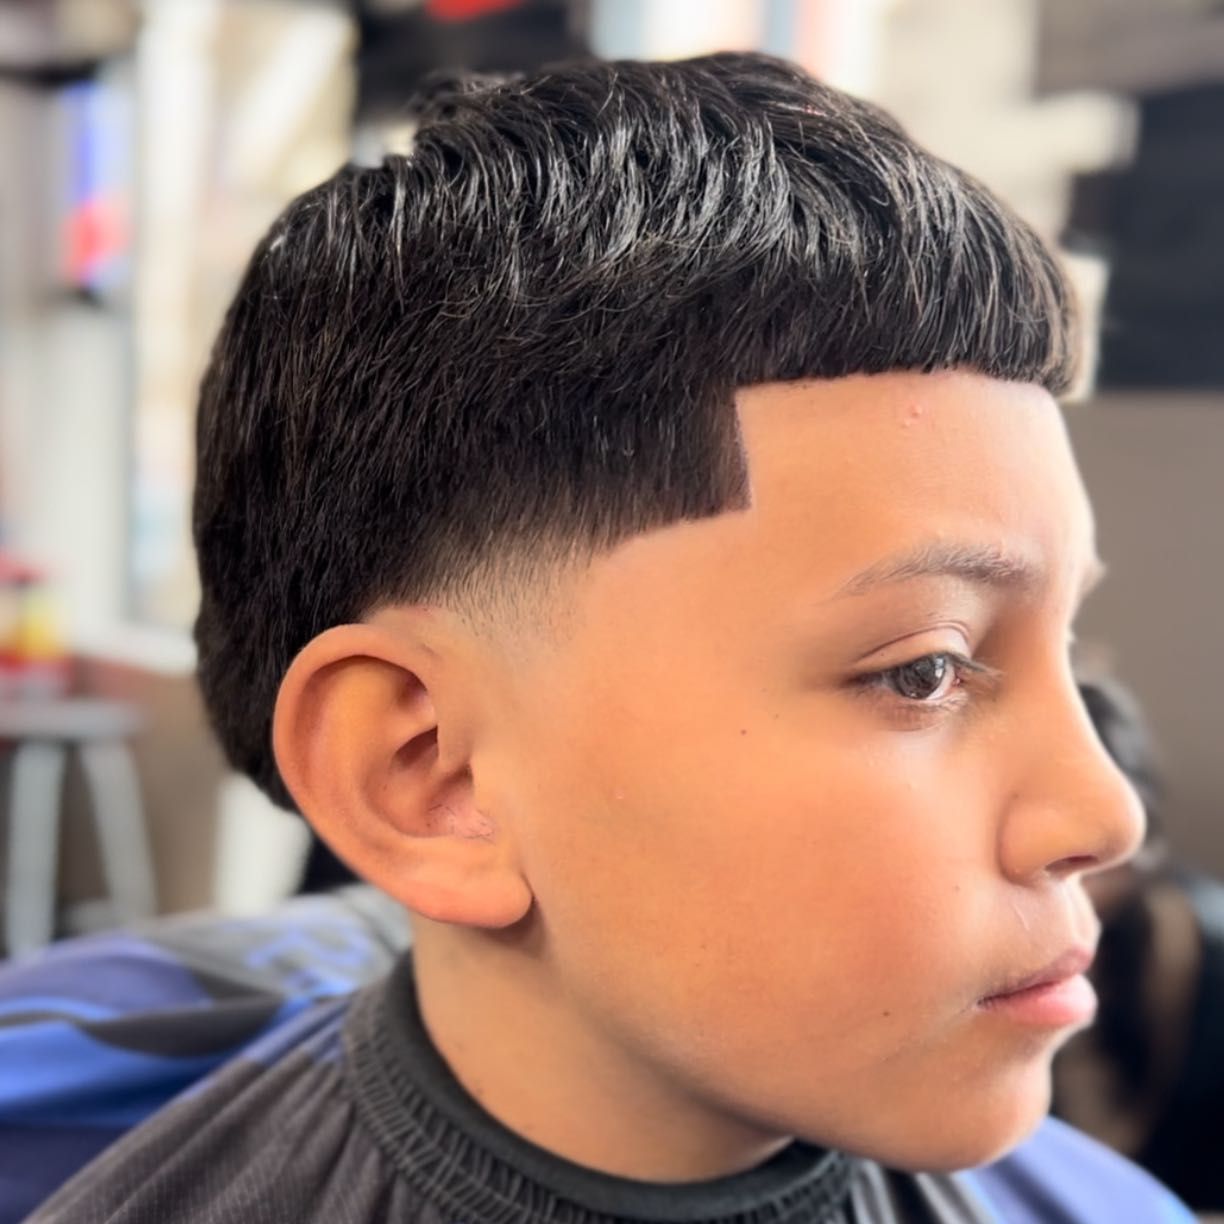 Kids haircuts (0-12 years old) portfolio